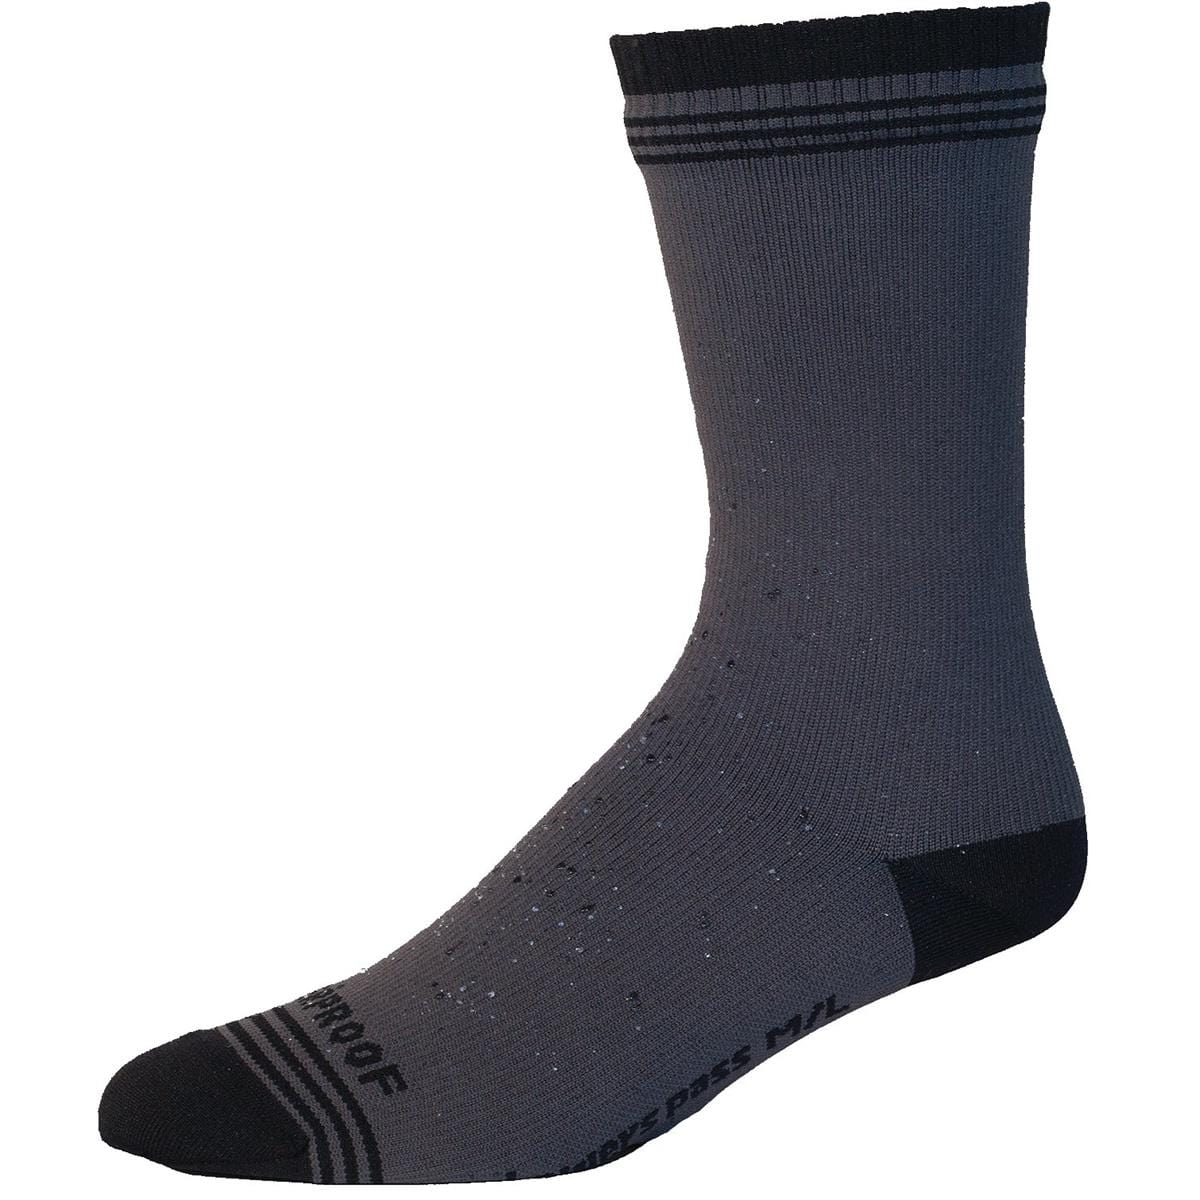 Showers Pass® Crosspoint Wool Waterproof Socks, 1 Pair